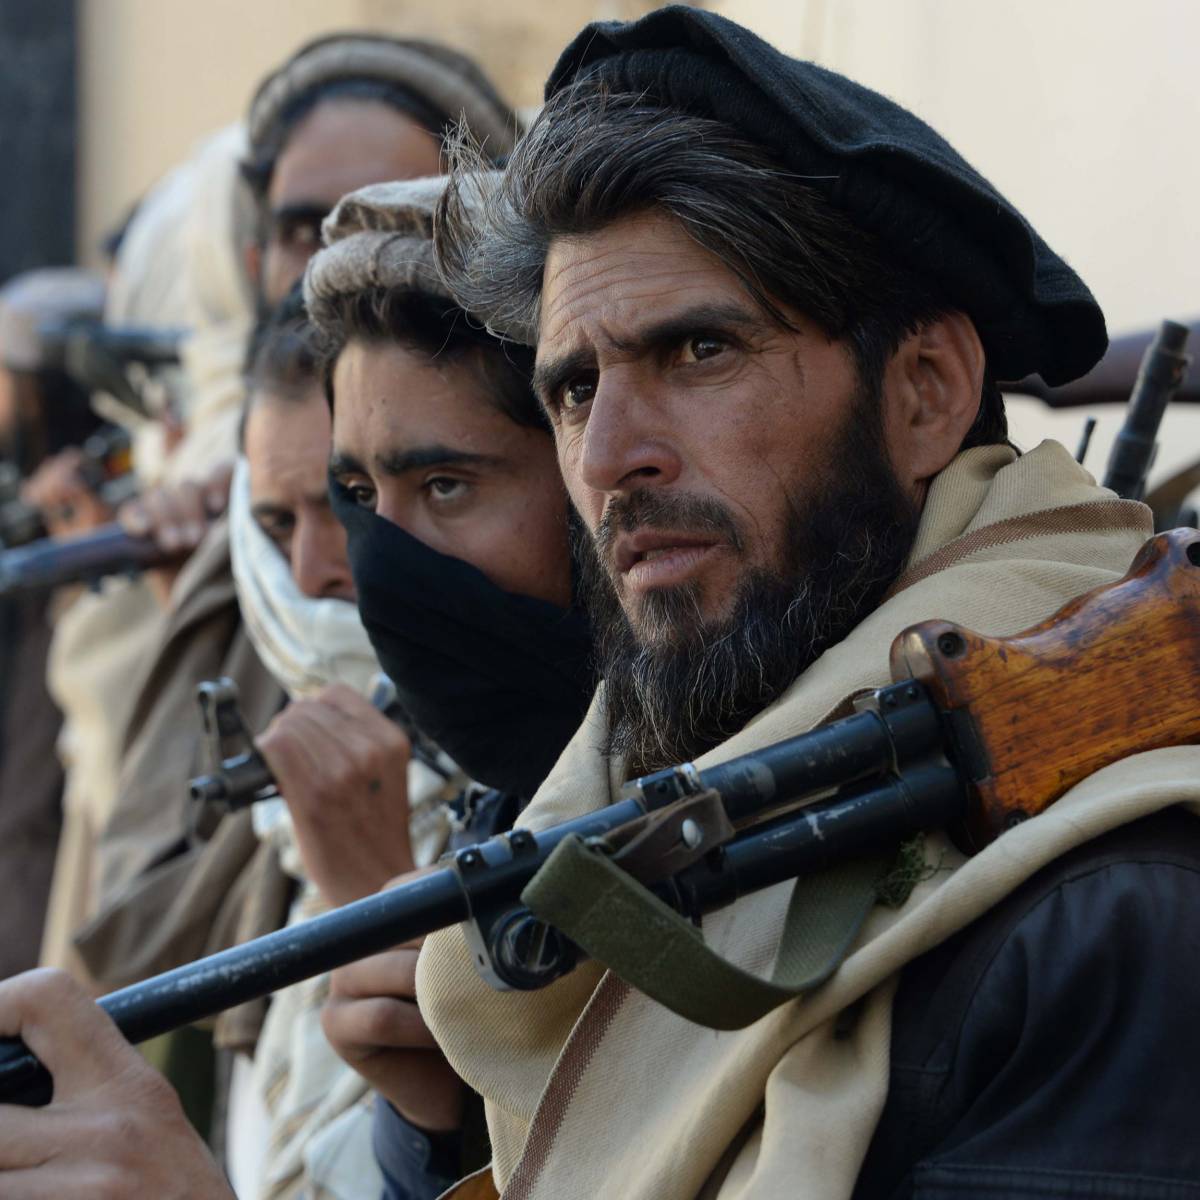 "Талибан" не пользуется популярностью среди афганцев